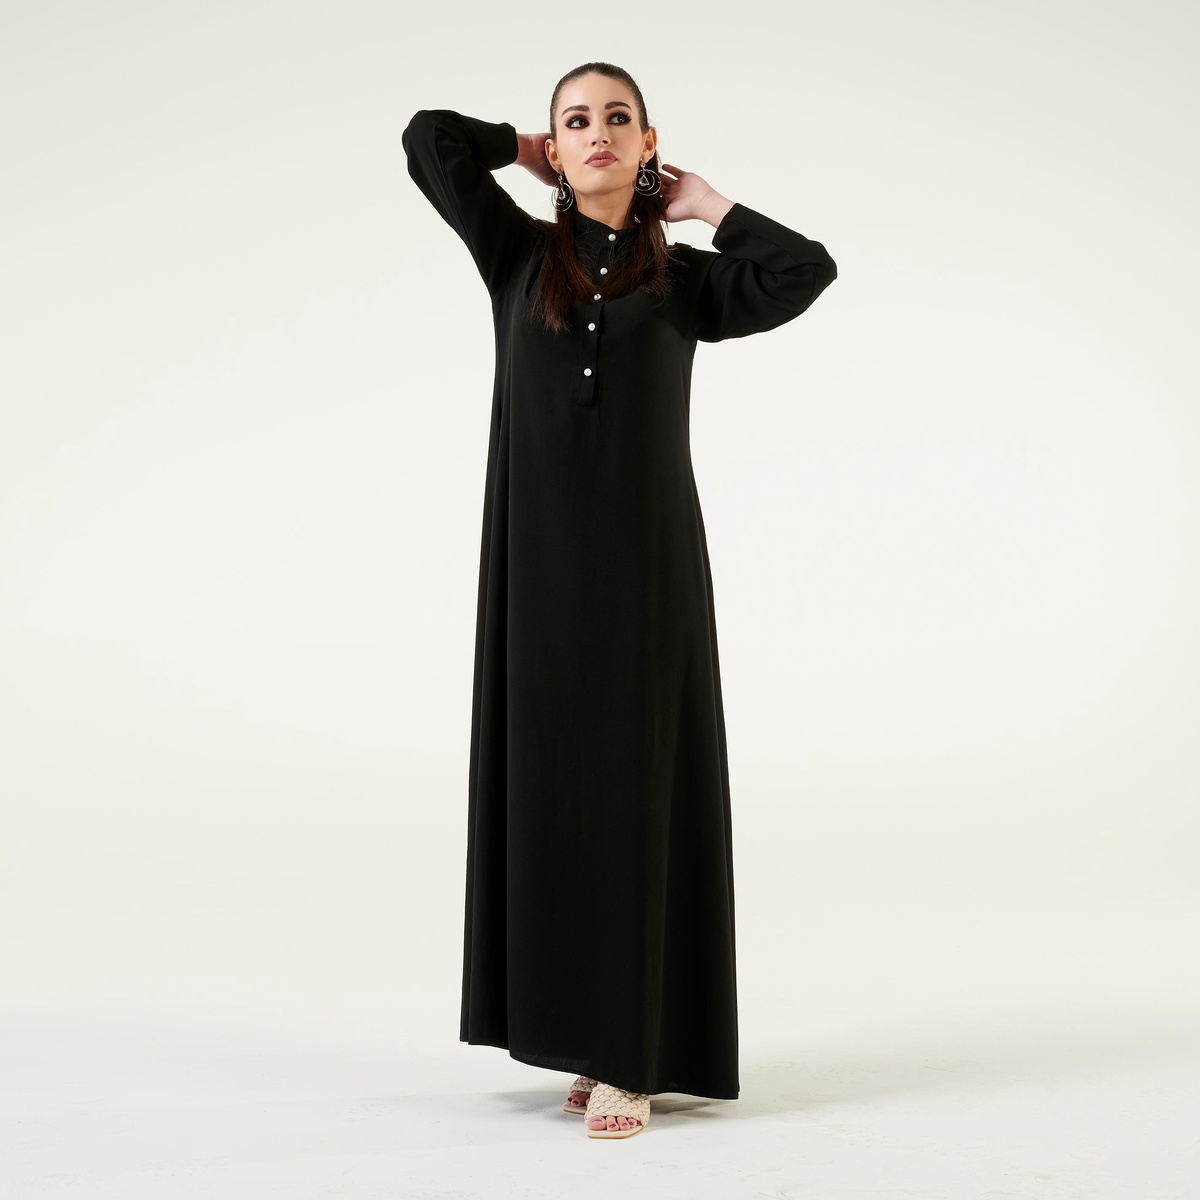 Decoding Elegance: Long Sleeve Maxi Dresses vs. Casual Maxi Dresses"